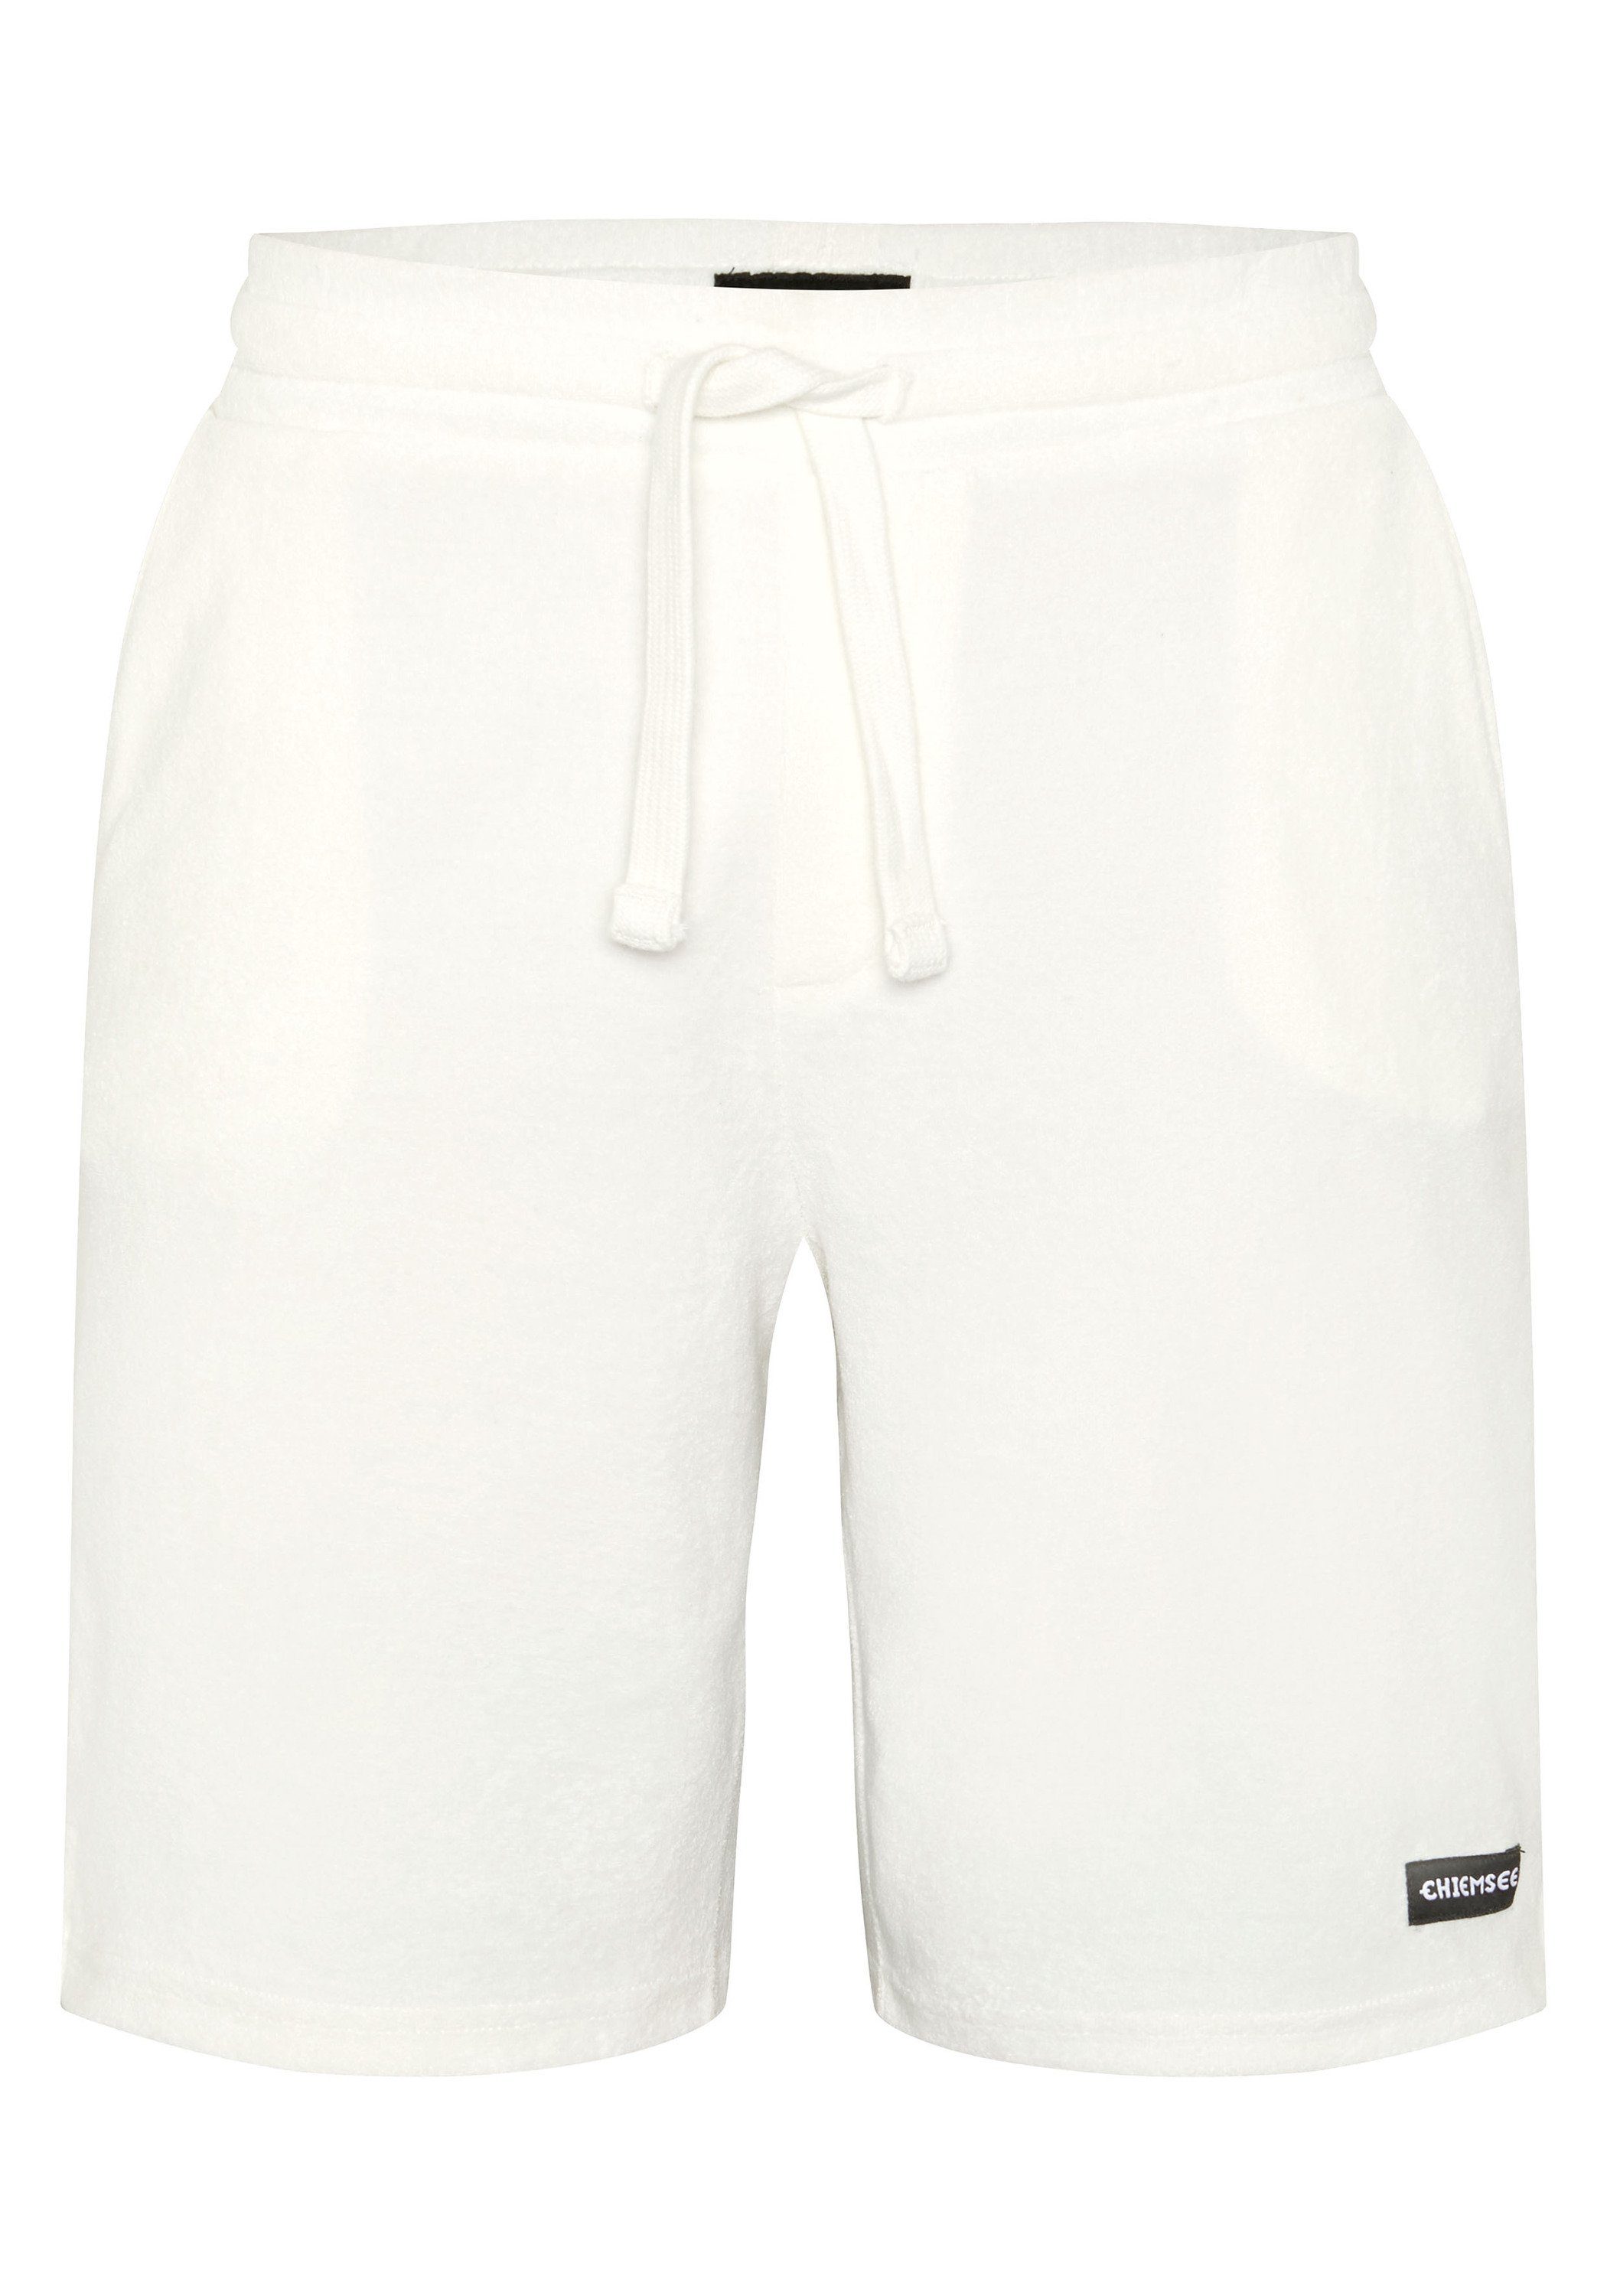 Chiemsee Sweatshorts Shorts aus Baumwollmix 1, CHIEMSEE Herren-Shorts im  cleanen Look